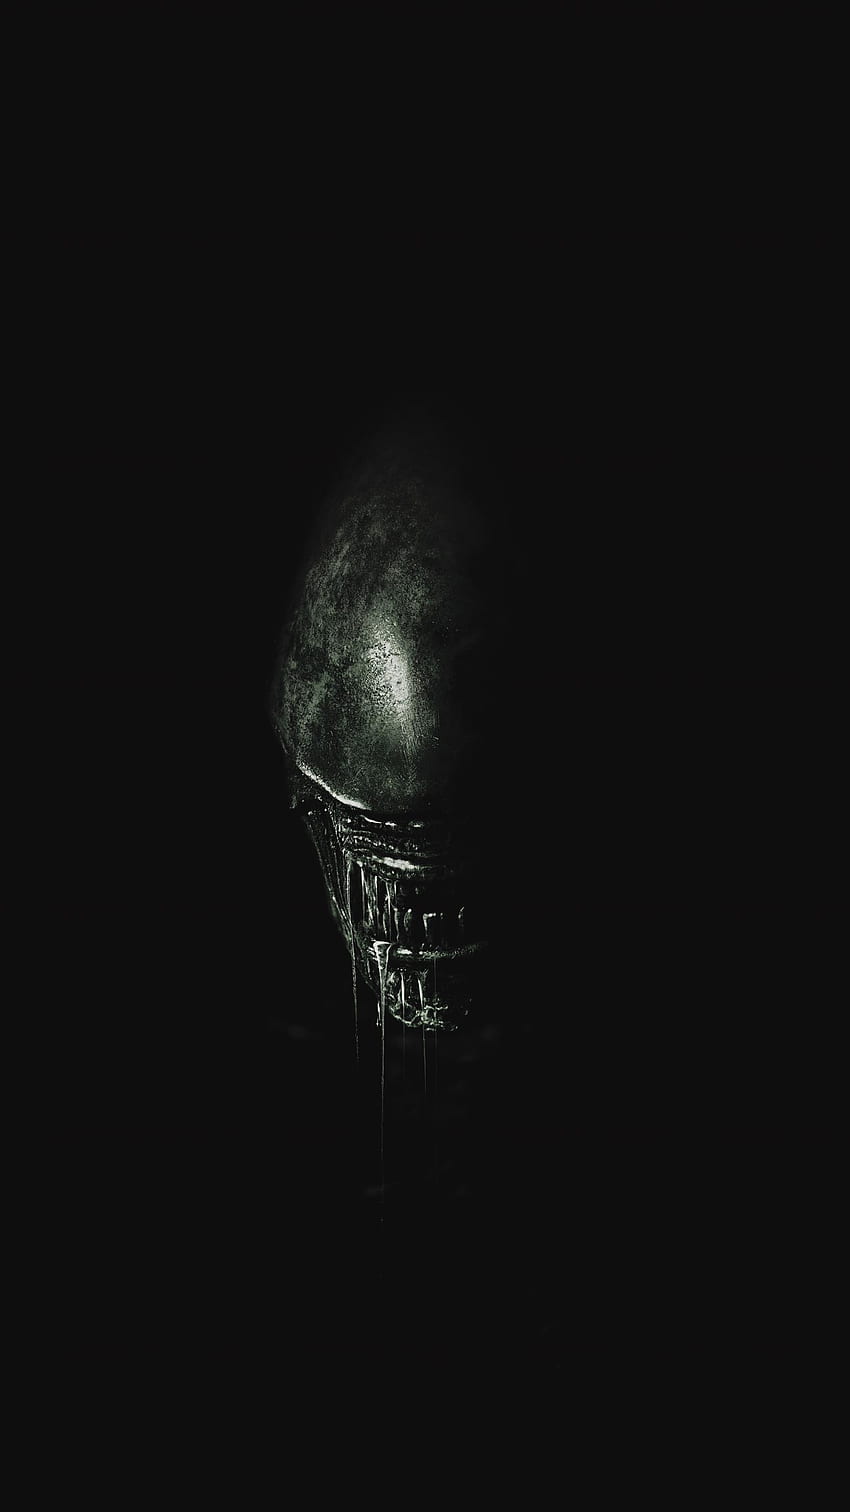 Alien: Covenant (2017) Teléfono, Alien Skull fondo de pantalla del teléfono